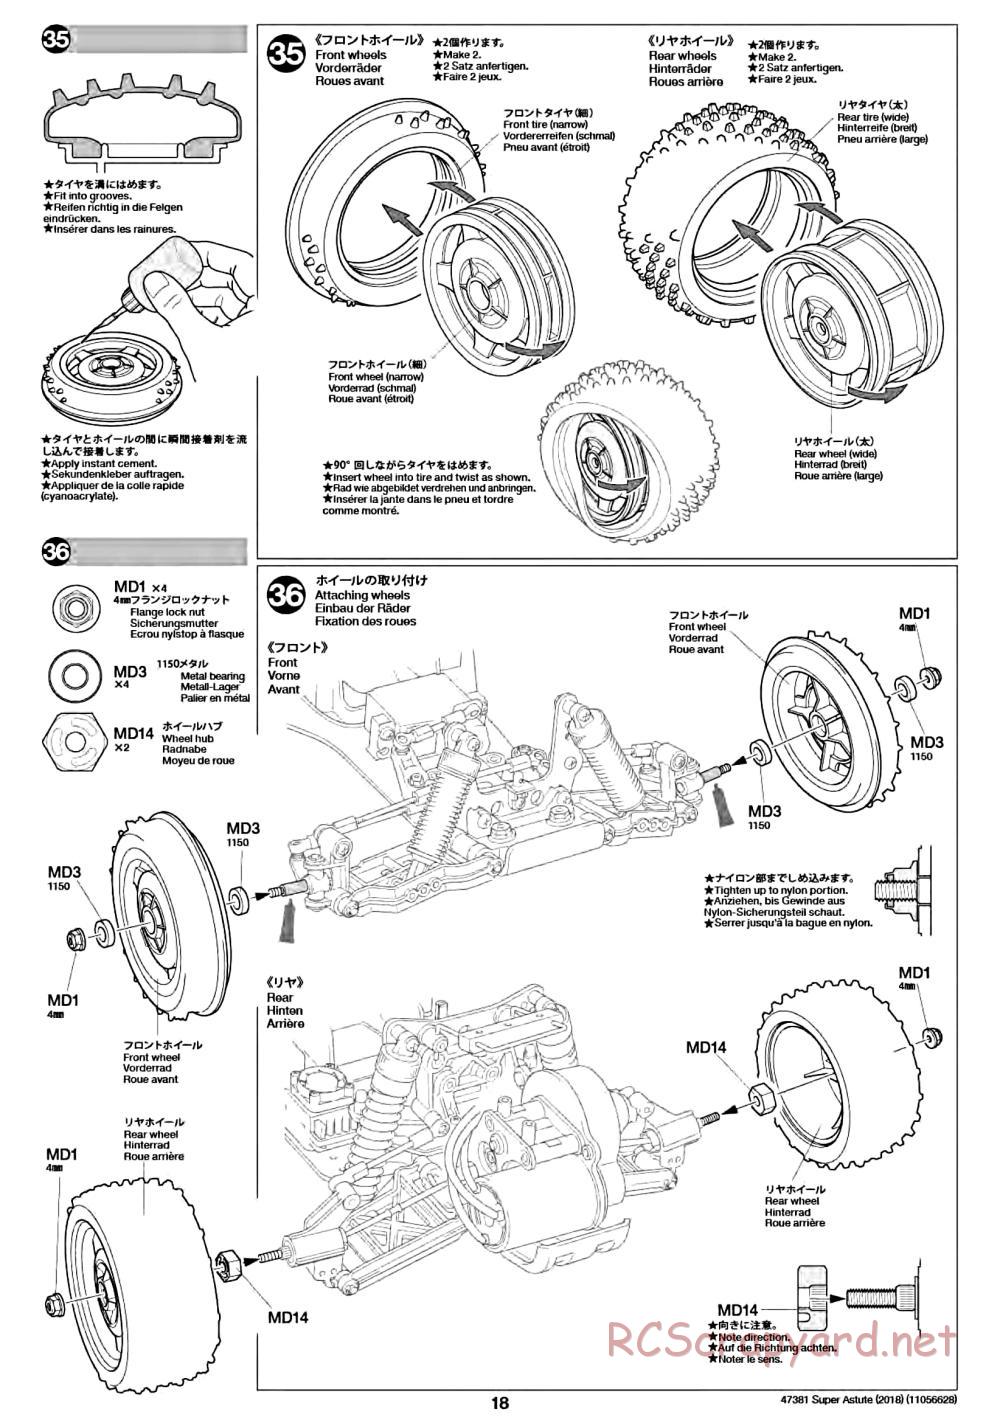 Tamiya - Super Astute (2018) Chassis - Manual - Page 18